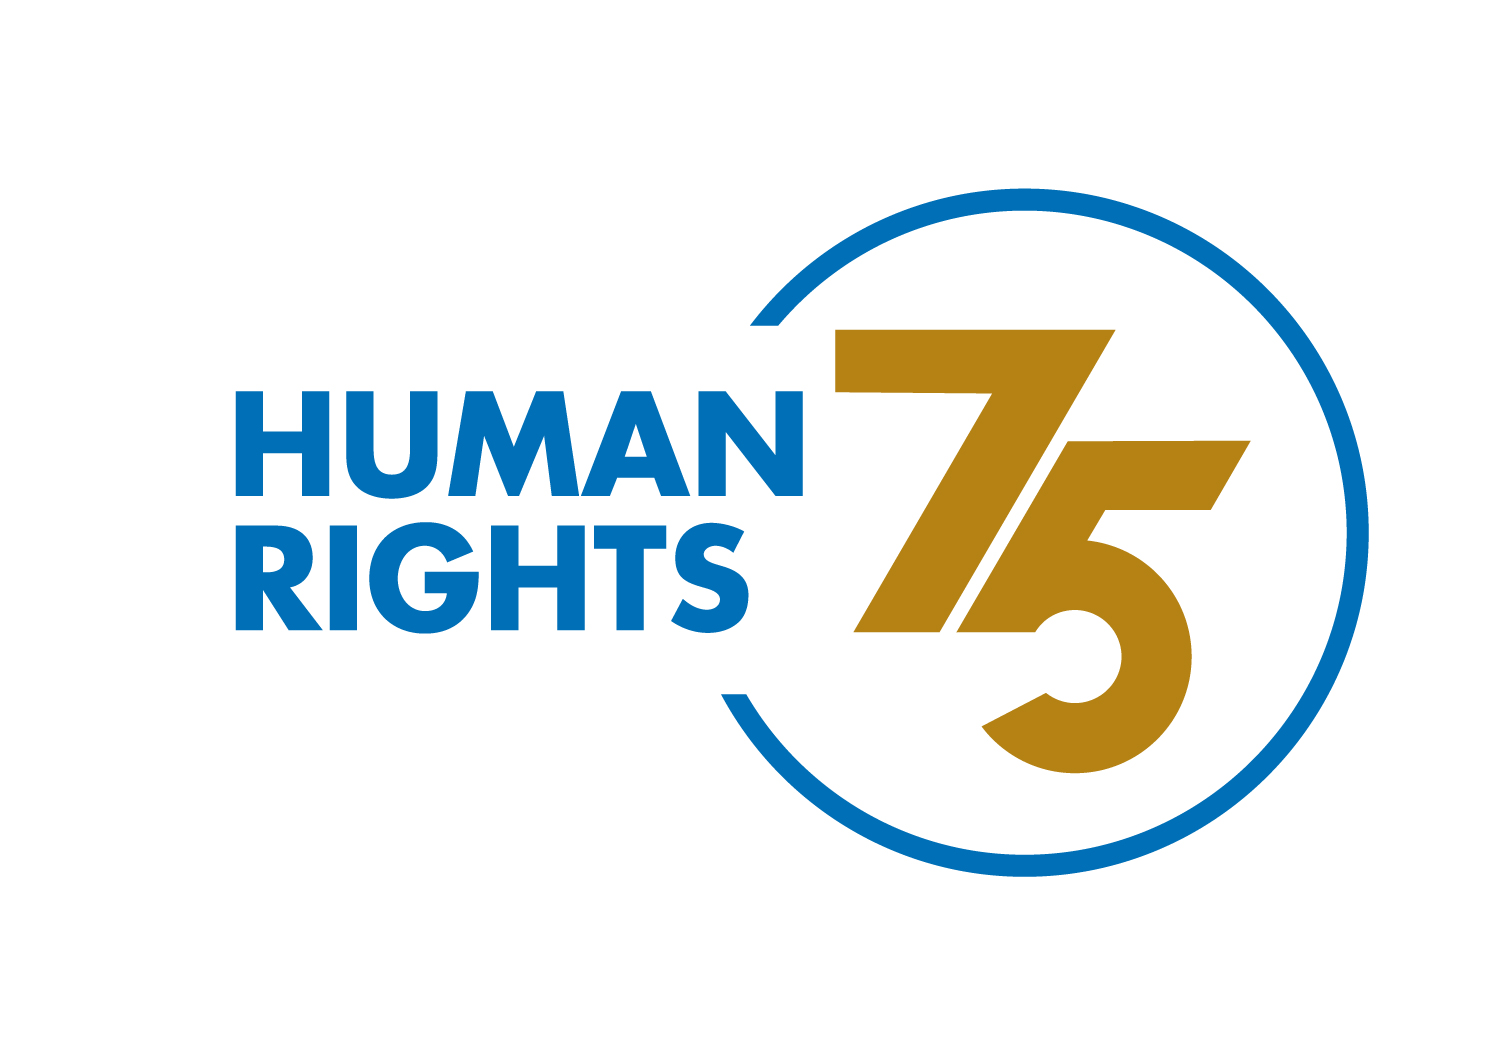 Human Rights 75